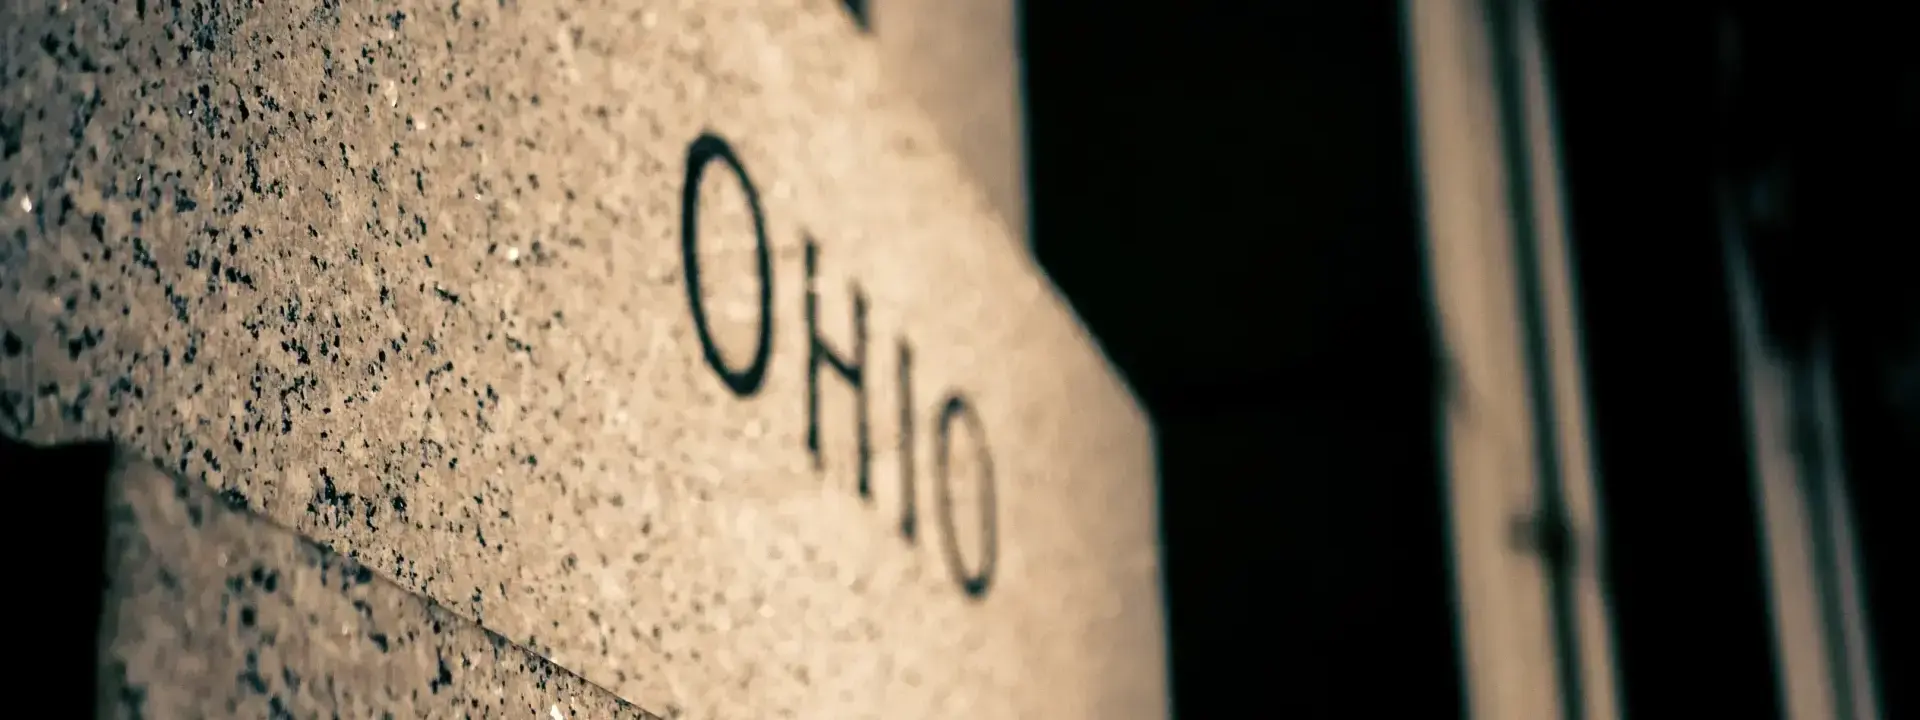 Ohio United States of America